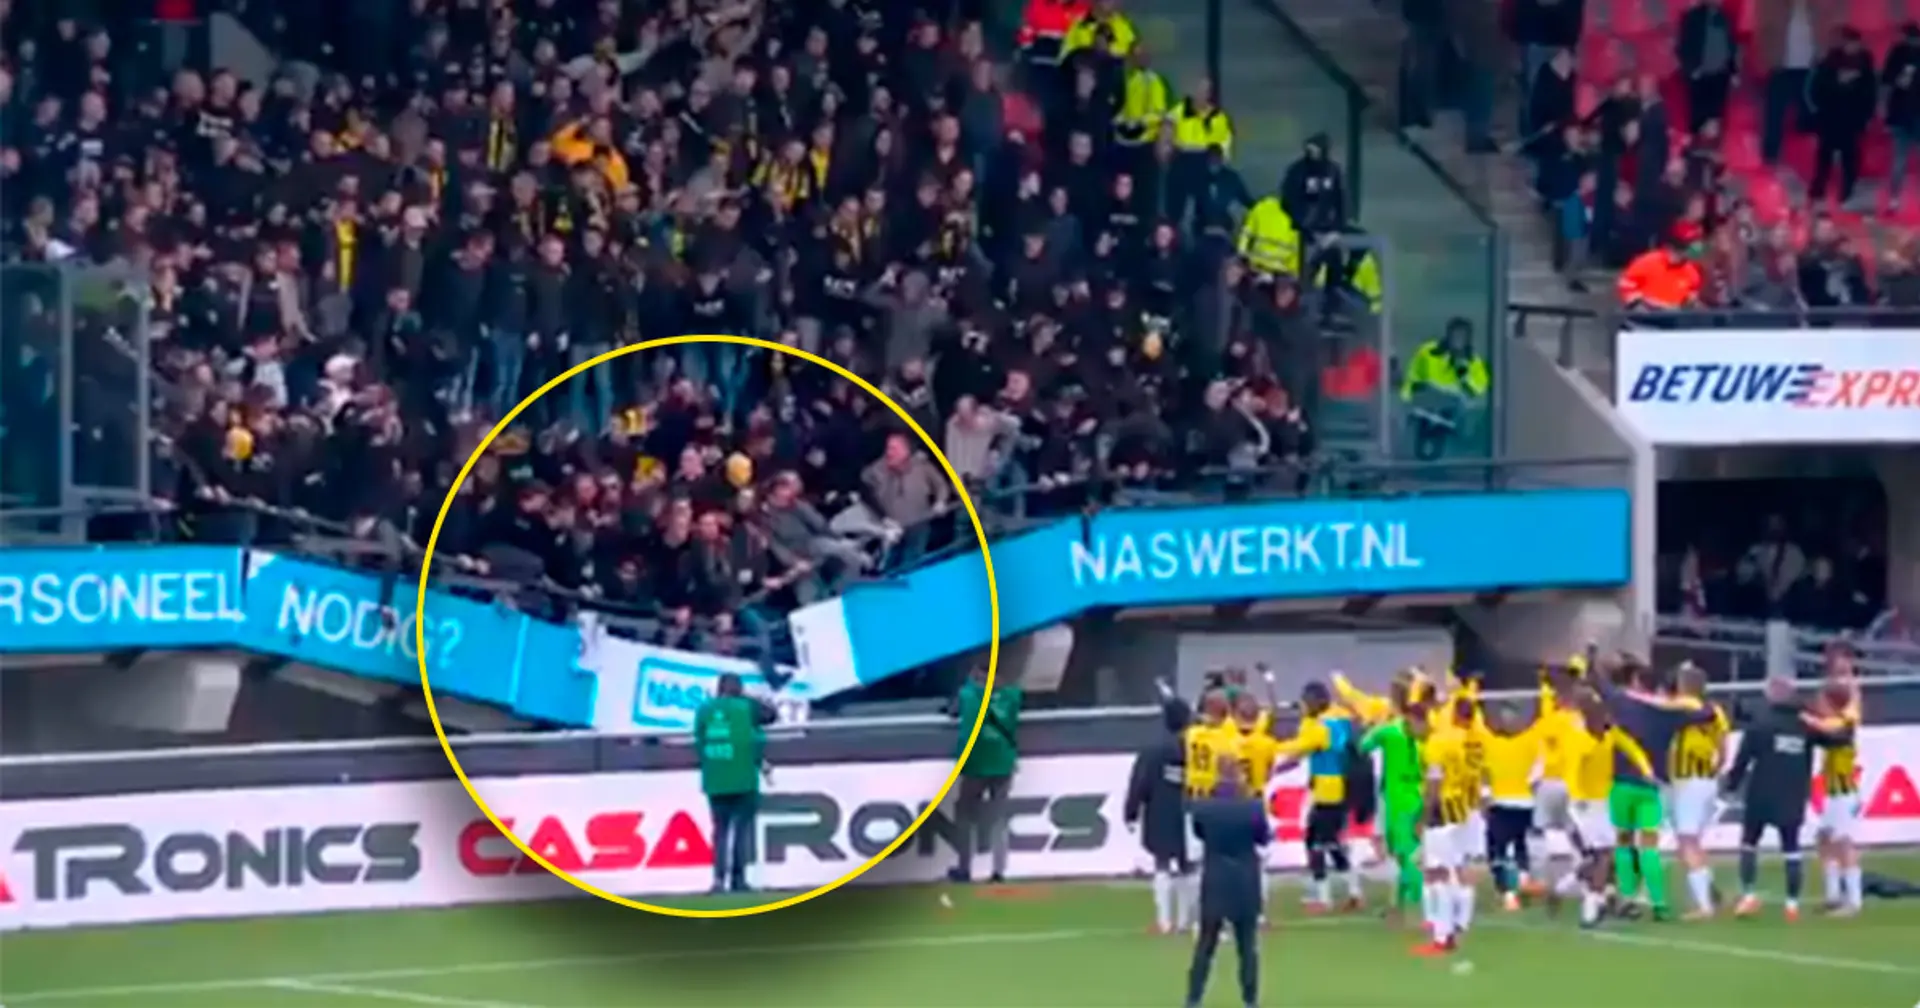 Schrecksekunde: Tribüne stürzt, indem Vitesse-Fans den Sieg mit den Spielern feiern